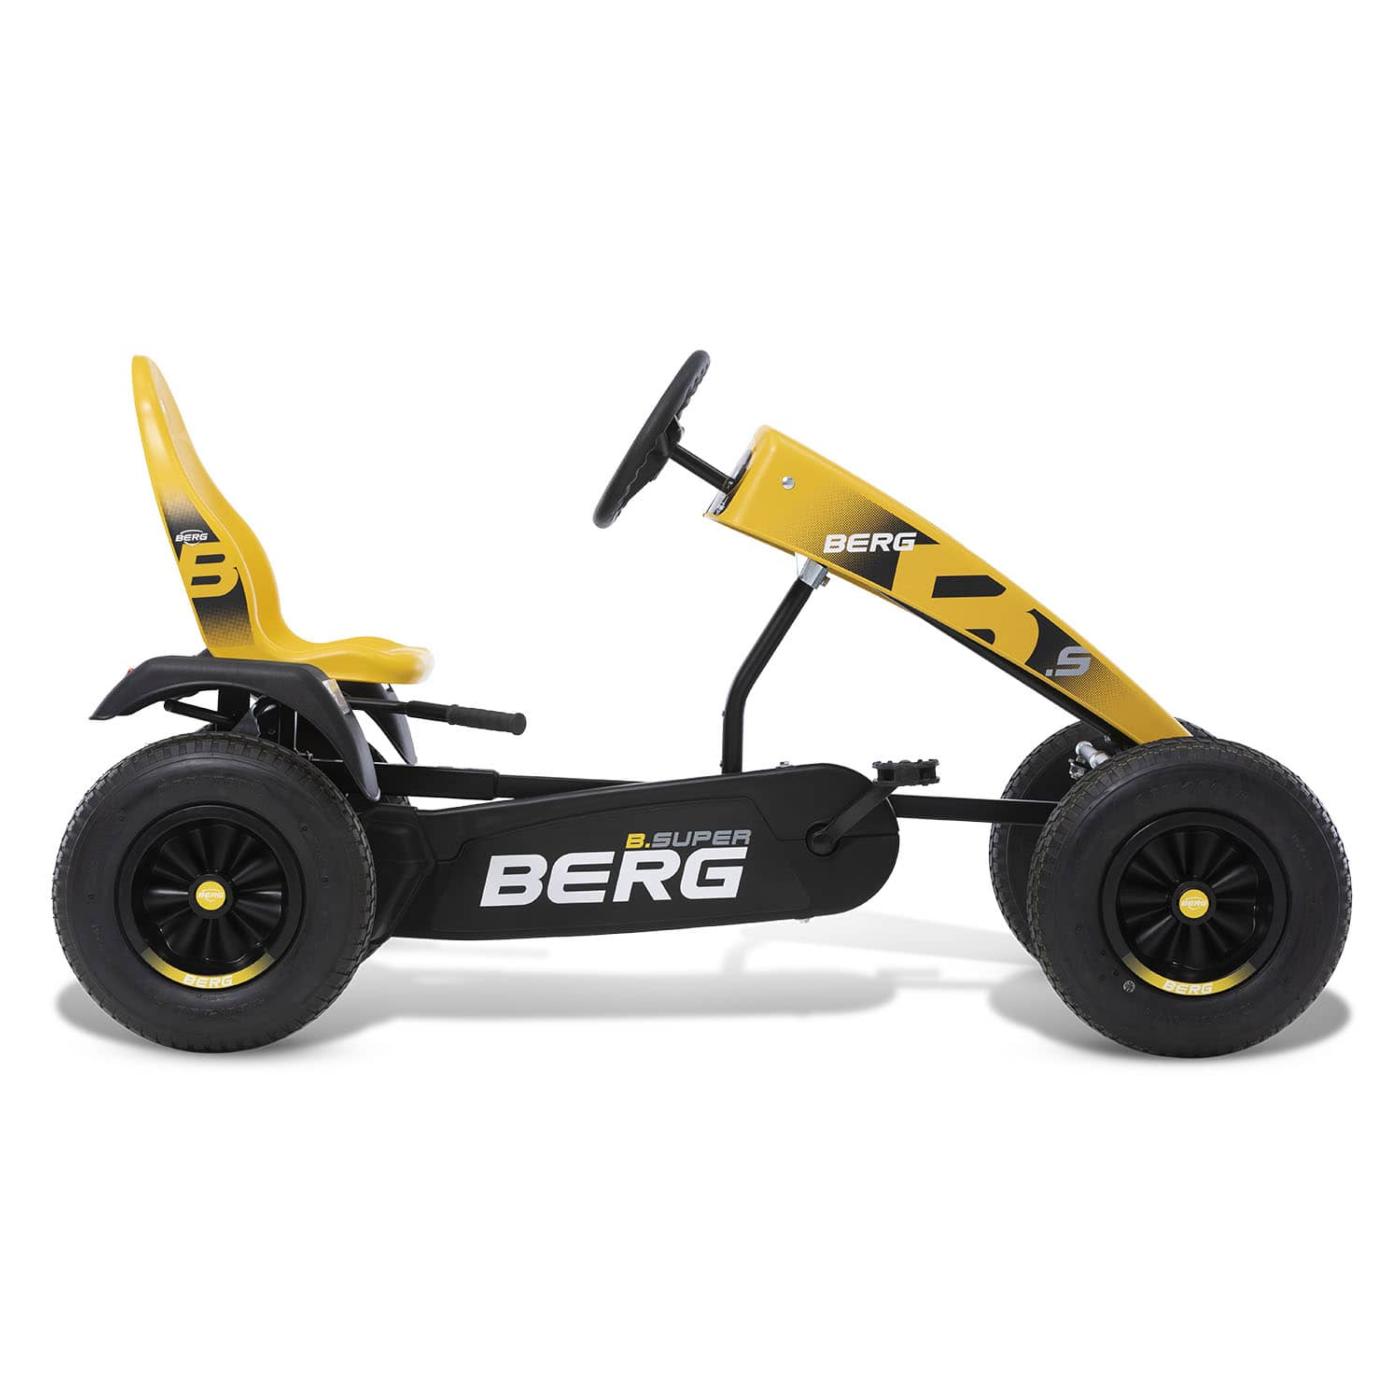 Quad de pedals BERG XL B.Super Yellow BFR-3 amb canvi de marxes